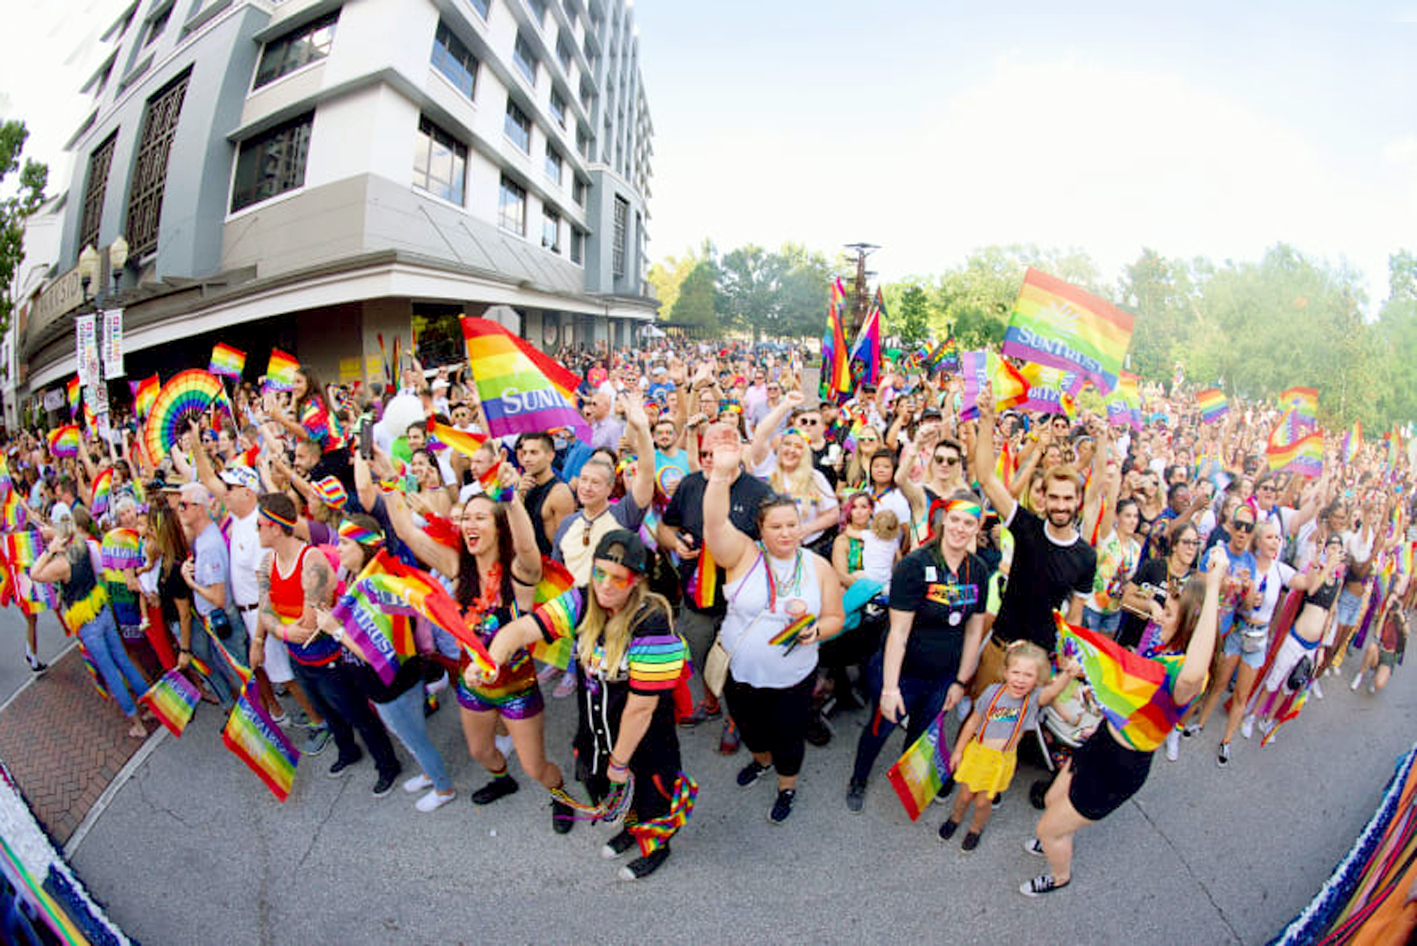 Đám đông tại Orlando (Mỹ) chào mừng Tháng tự hào của cộng đồng LGBTQ+ hồi tháng 6/2018 - ẢNH: COWPO